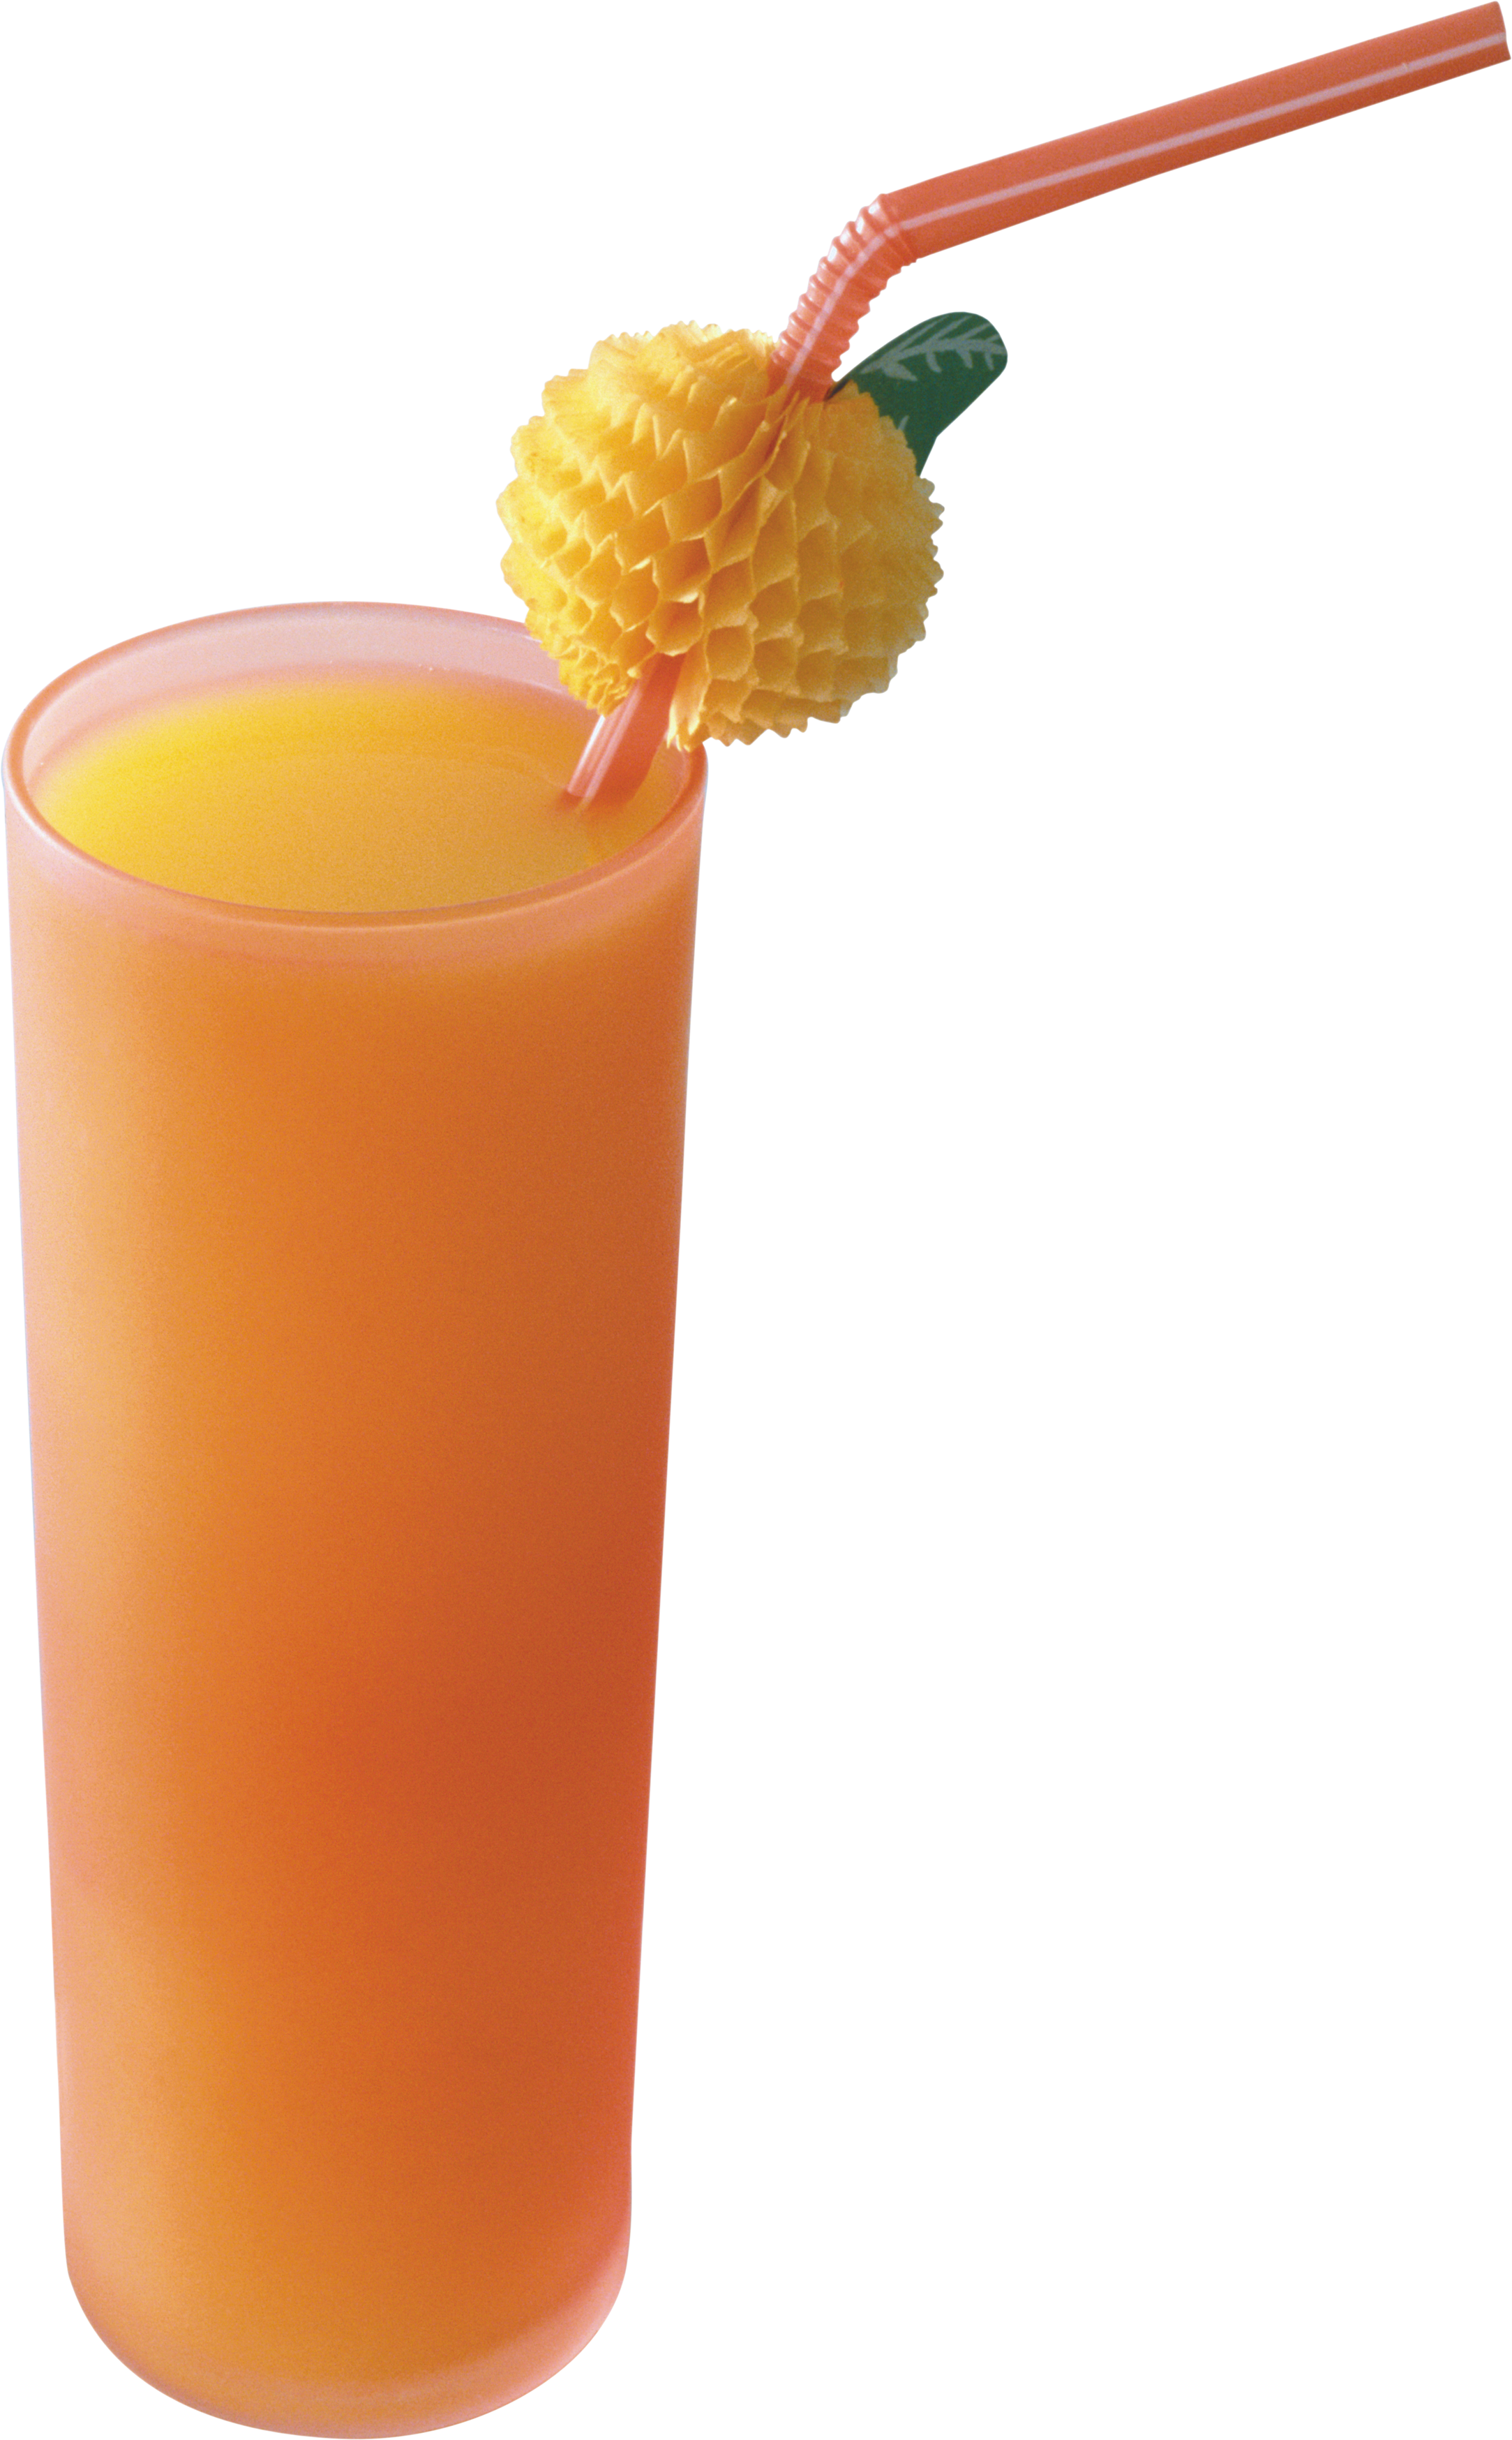 Orange Juice PNG Image